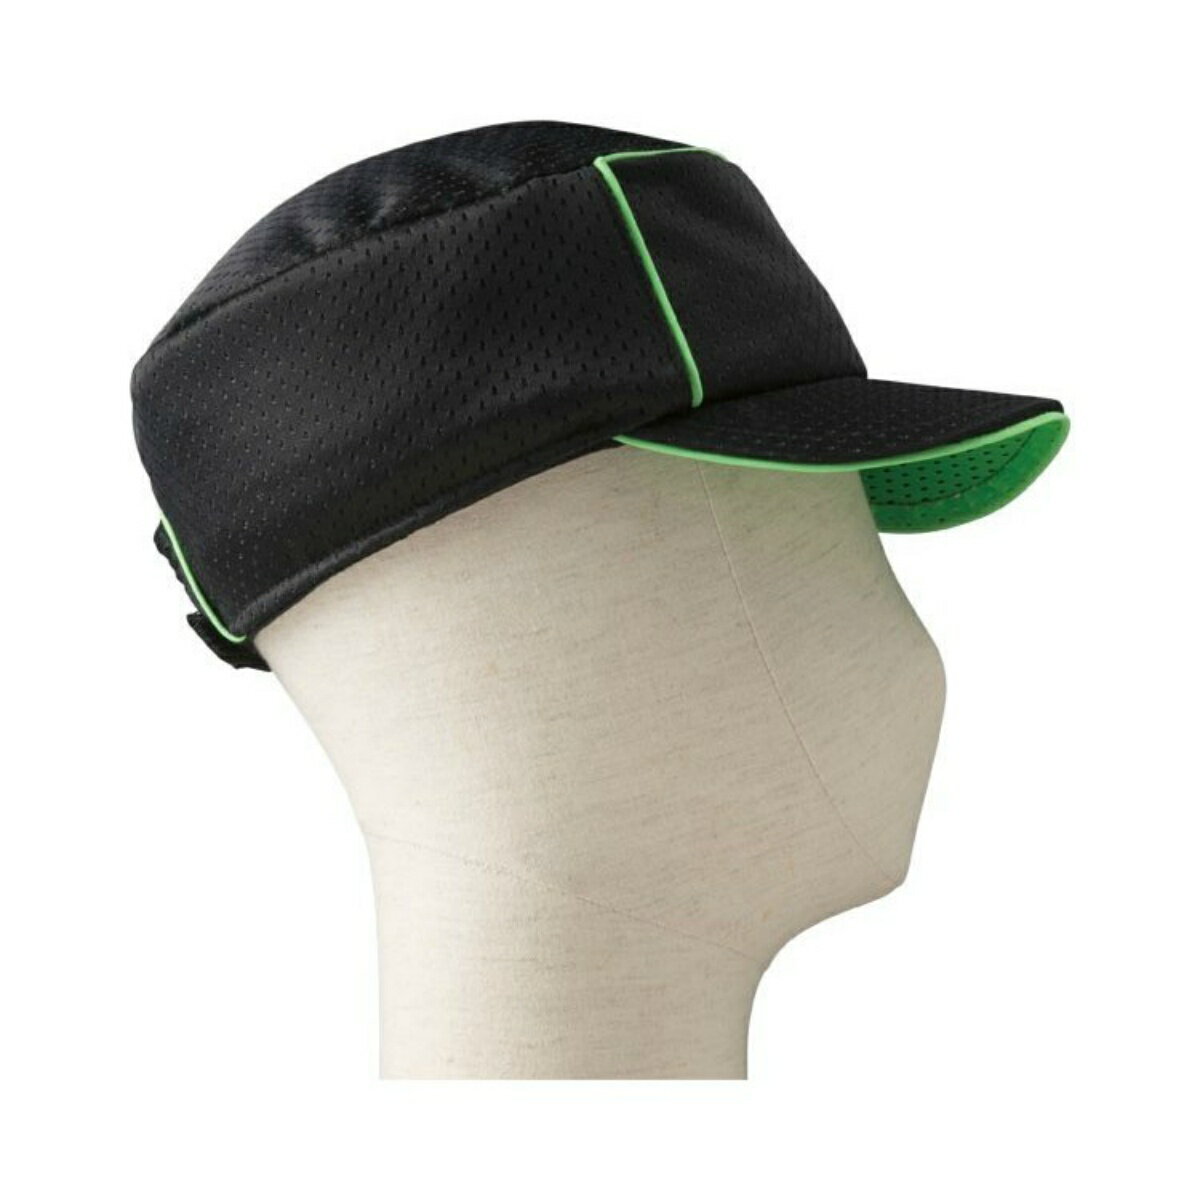 商品名：特殊衣料 アボネット abonet+JARI キャップメッシュ グリーン内容量：1個JANコード：4521573012581発売元、製造元、輸入元又は販売元：特殊衣料商品番号：103-4521573012581・通気性に優れたスポーティな保護帽。・スポーツやサイクリング向けの保護帽。反射材が加工されており、夜道も安全●サイズ（頭囲）／56〜58cm●重さ／約140g●材質／表地：ポリエステル100％、緩衝材：ポリエチレンビーズ●生産国／日本●洗濯機可●脱水機不可●乾燥機不可広告文責：アットライフ株式会社TEL 050-3196-1510 ※商品パッケージは変更の場合あり。メーカー欠品または完売の際、キャンセルをお願いすることがあります。ご了承ください。